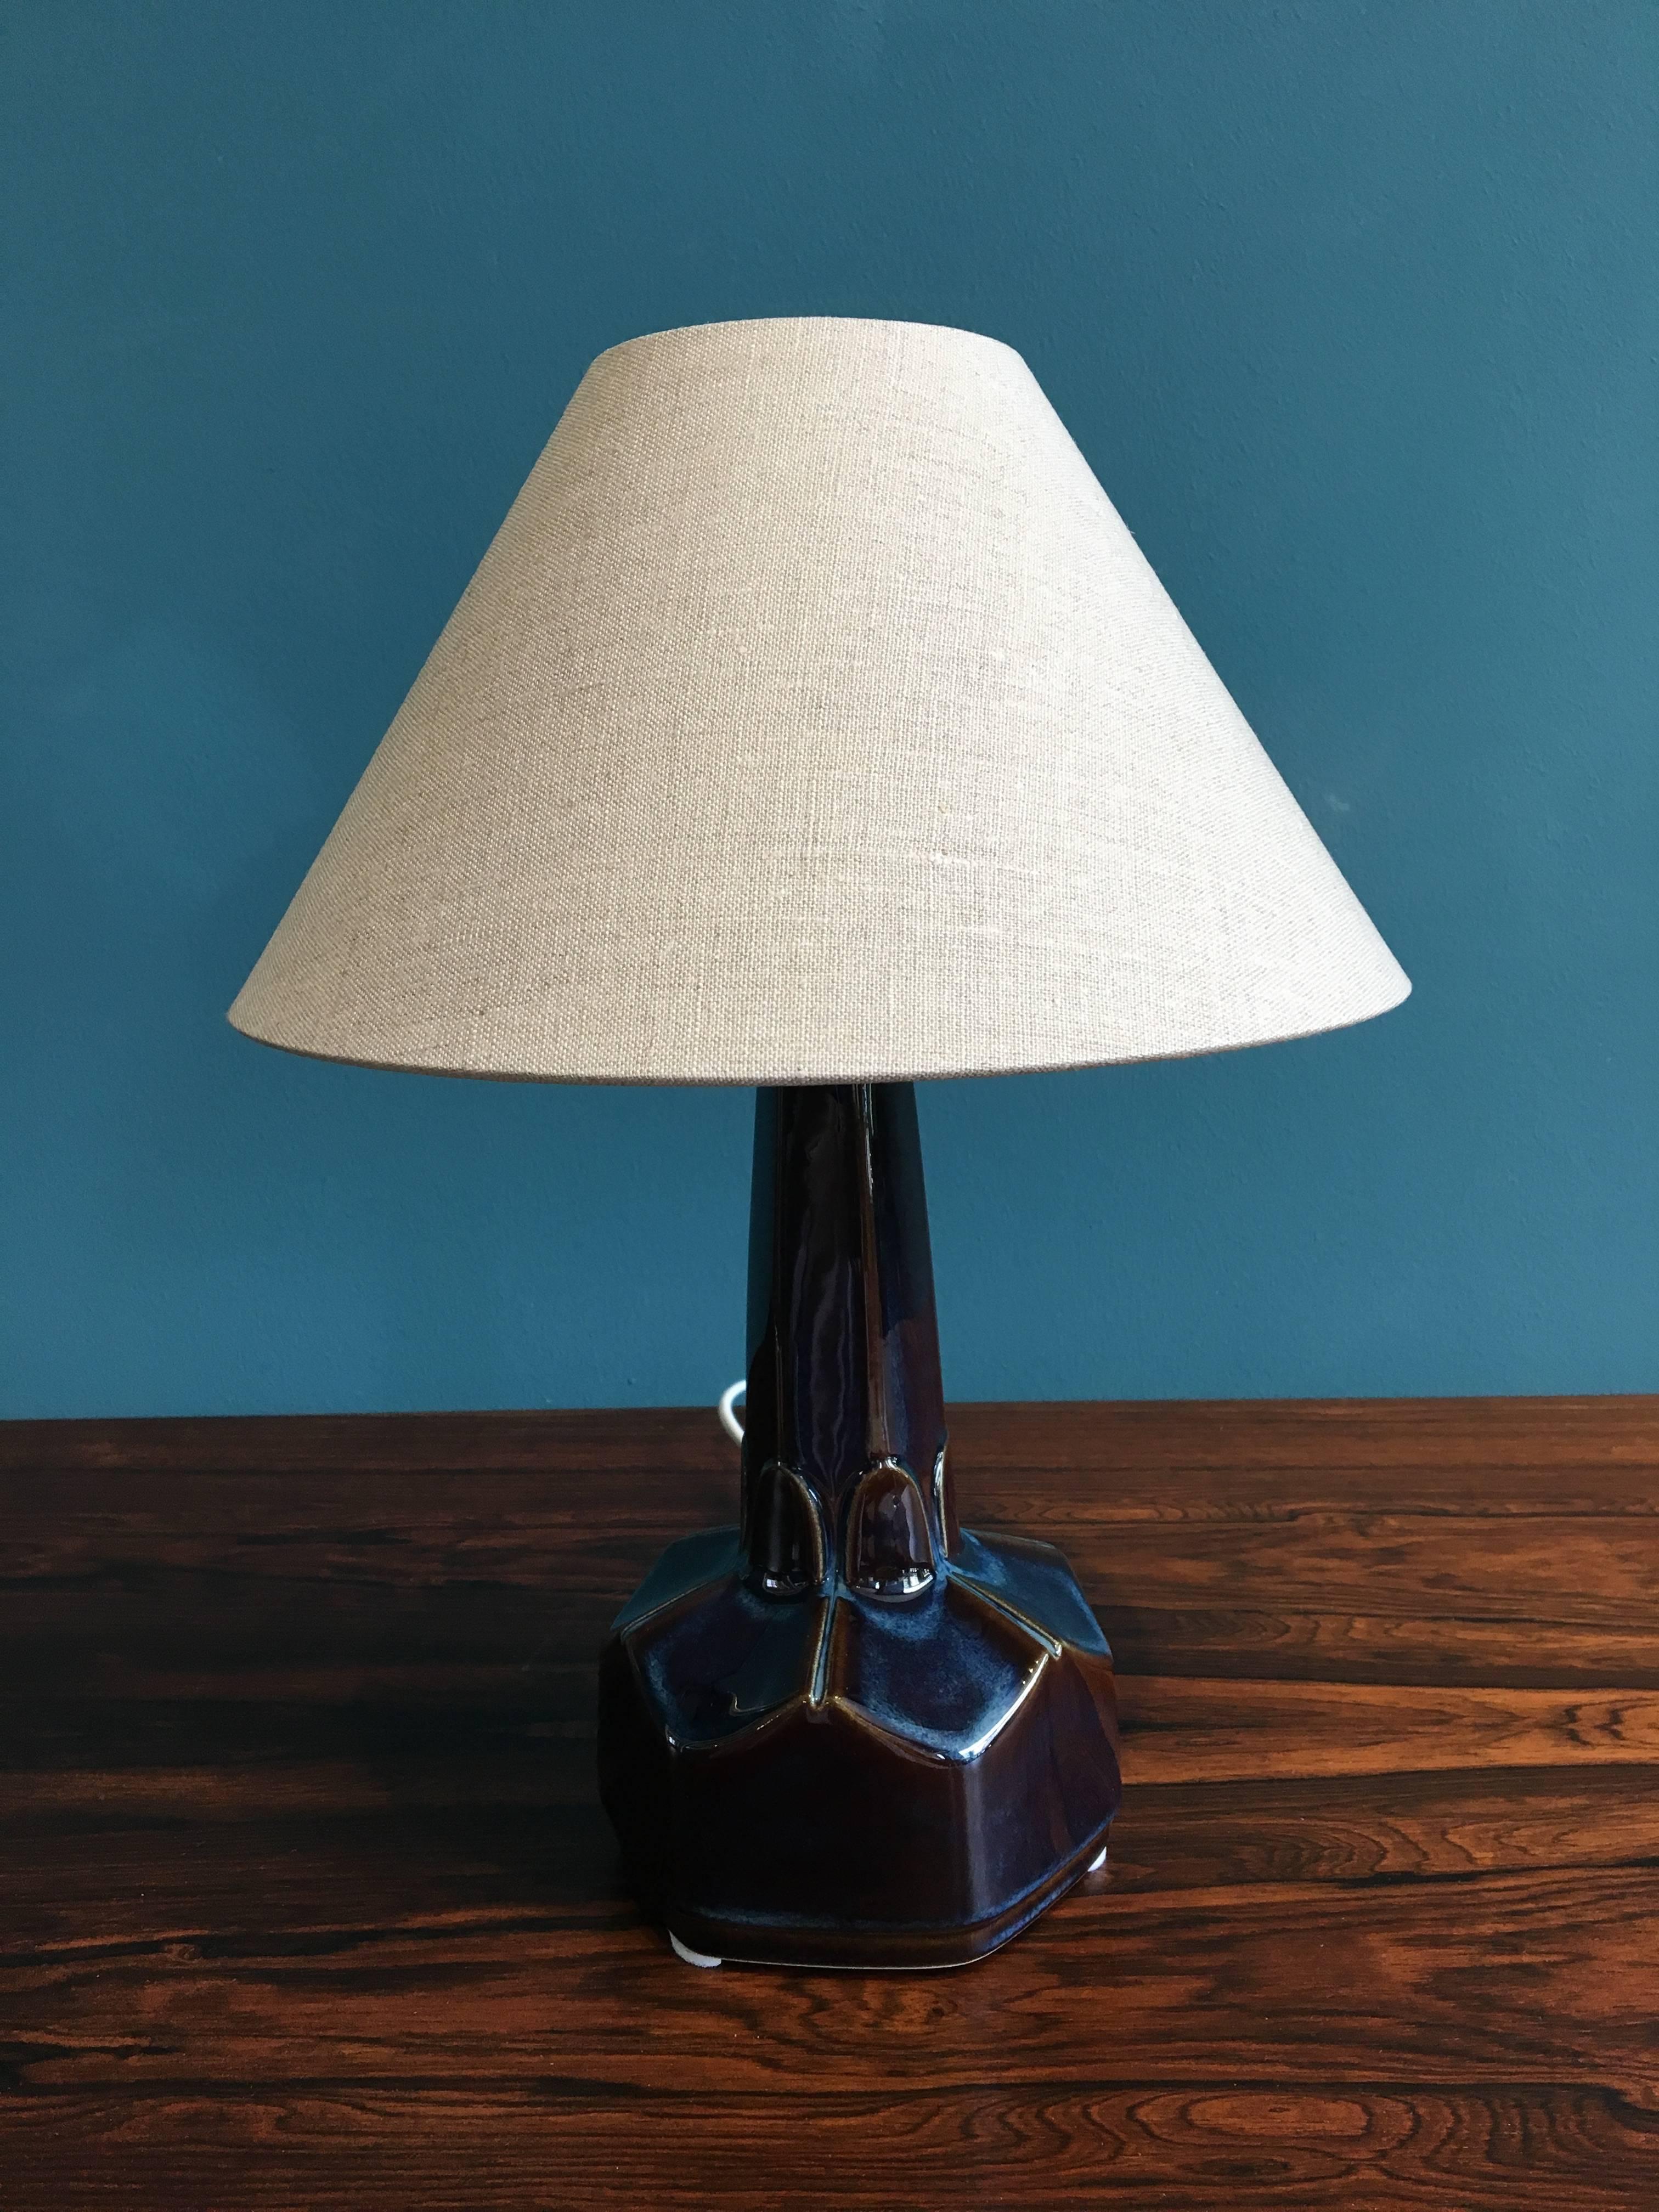 Small Danish Ceramic Table Lamp by Einar Johansen for Soholm Stentoj, 1960s (Dänisch)